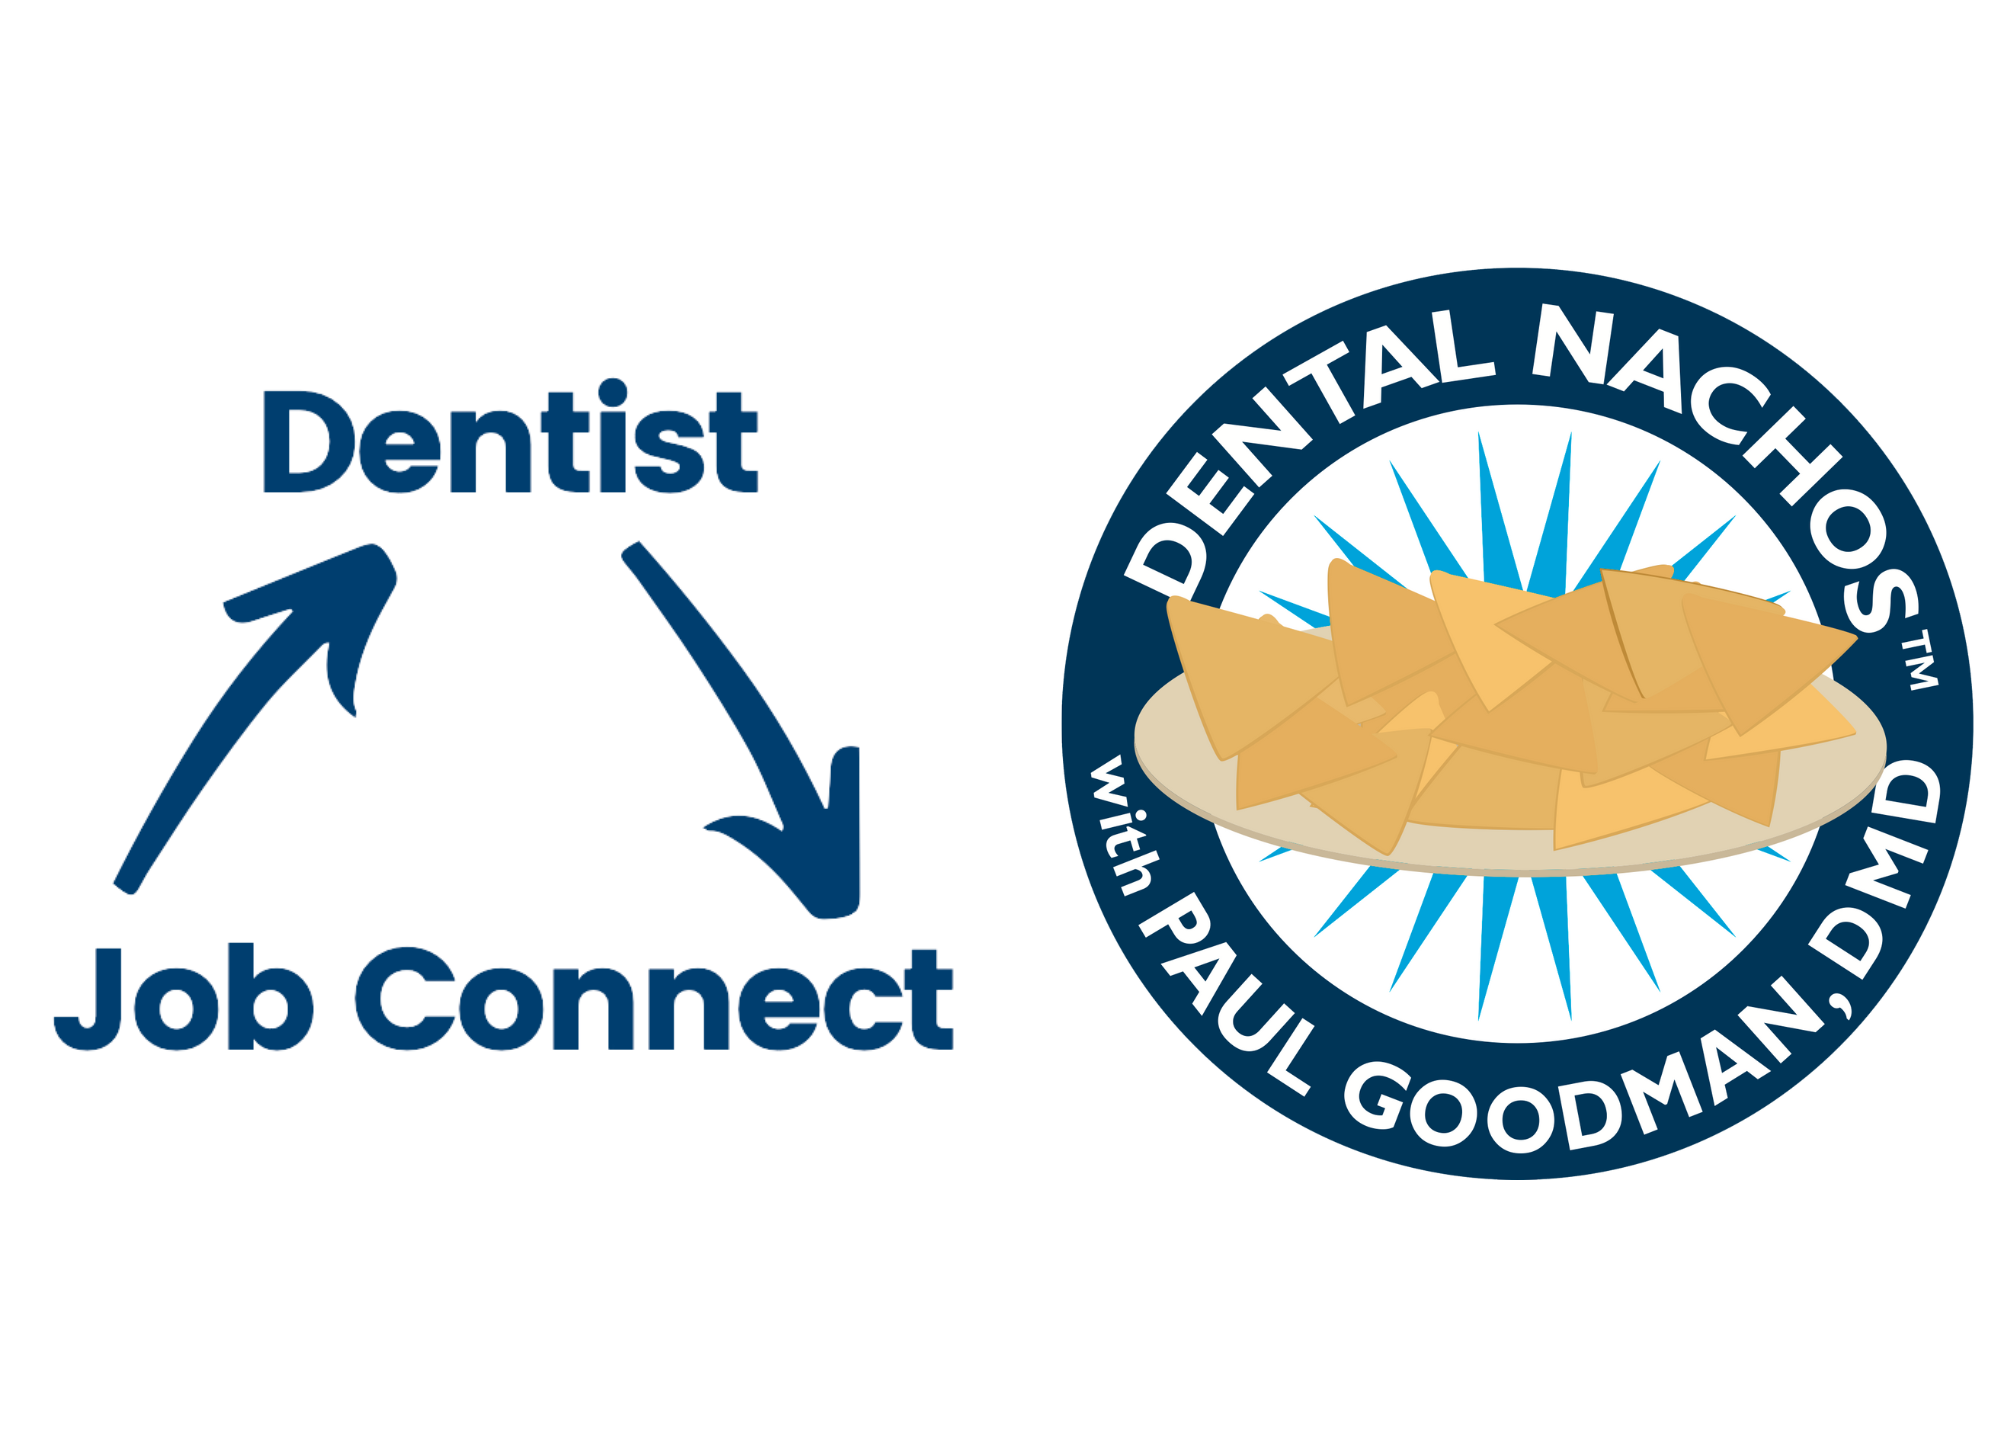 DN + DJC logos